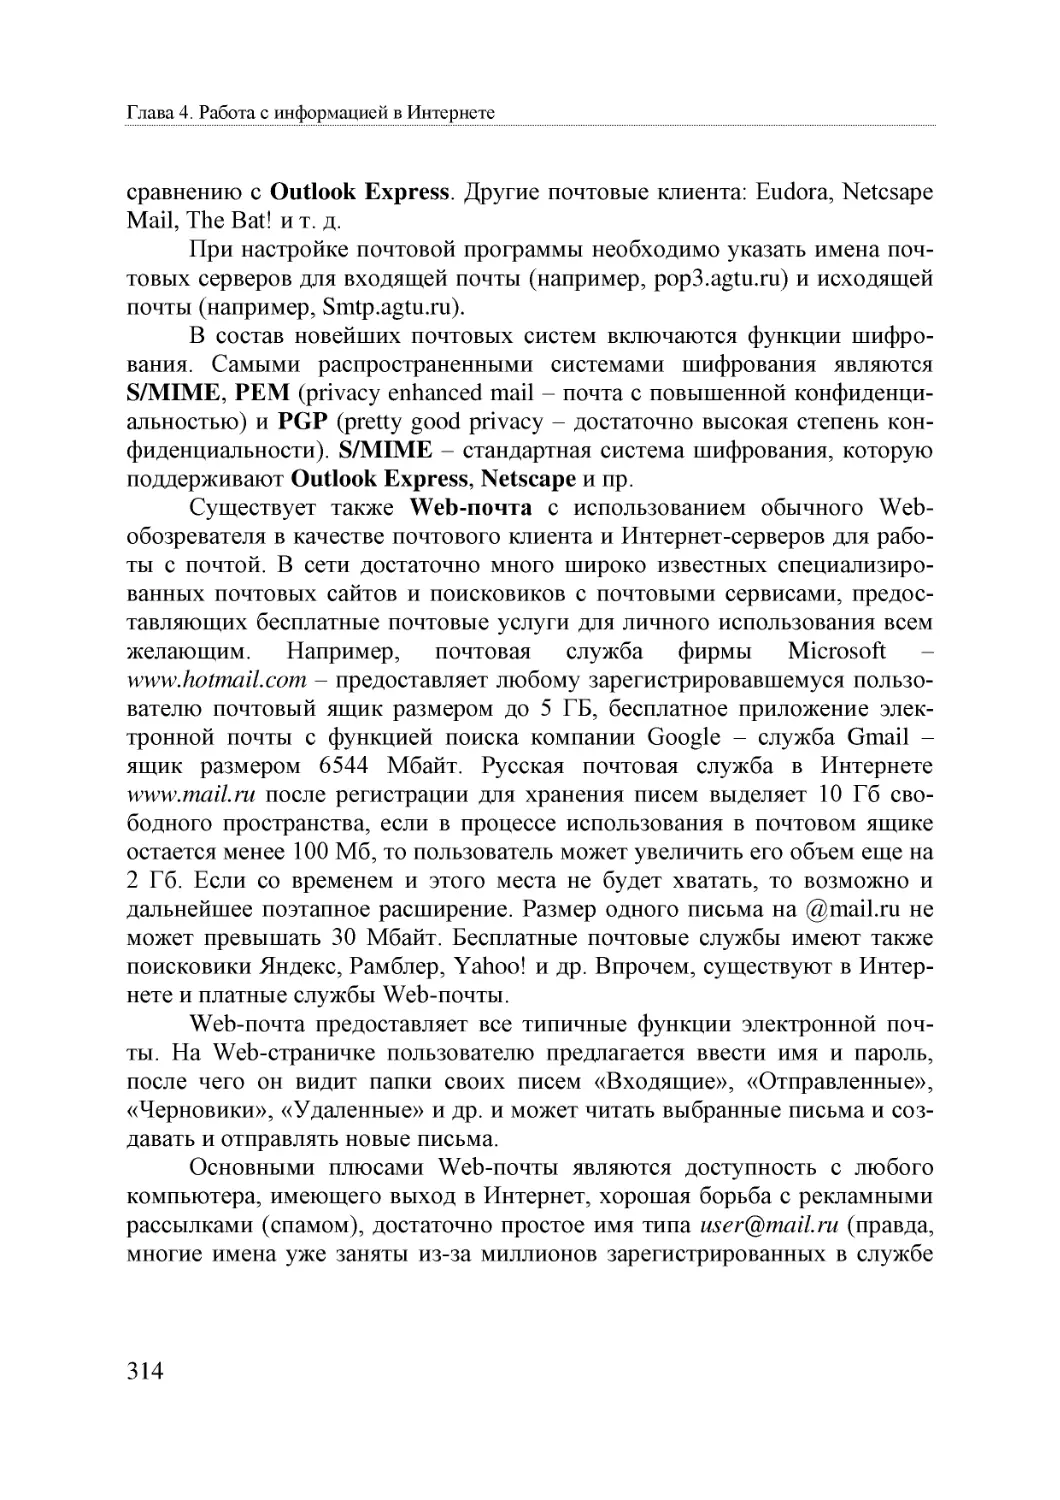 Informatika_Uchebnik_dlya_vuzov_2010 314